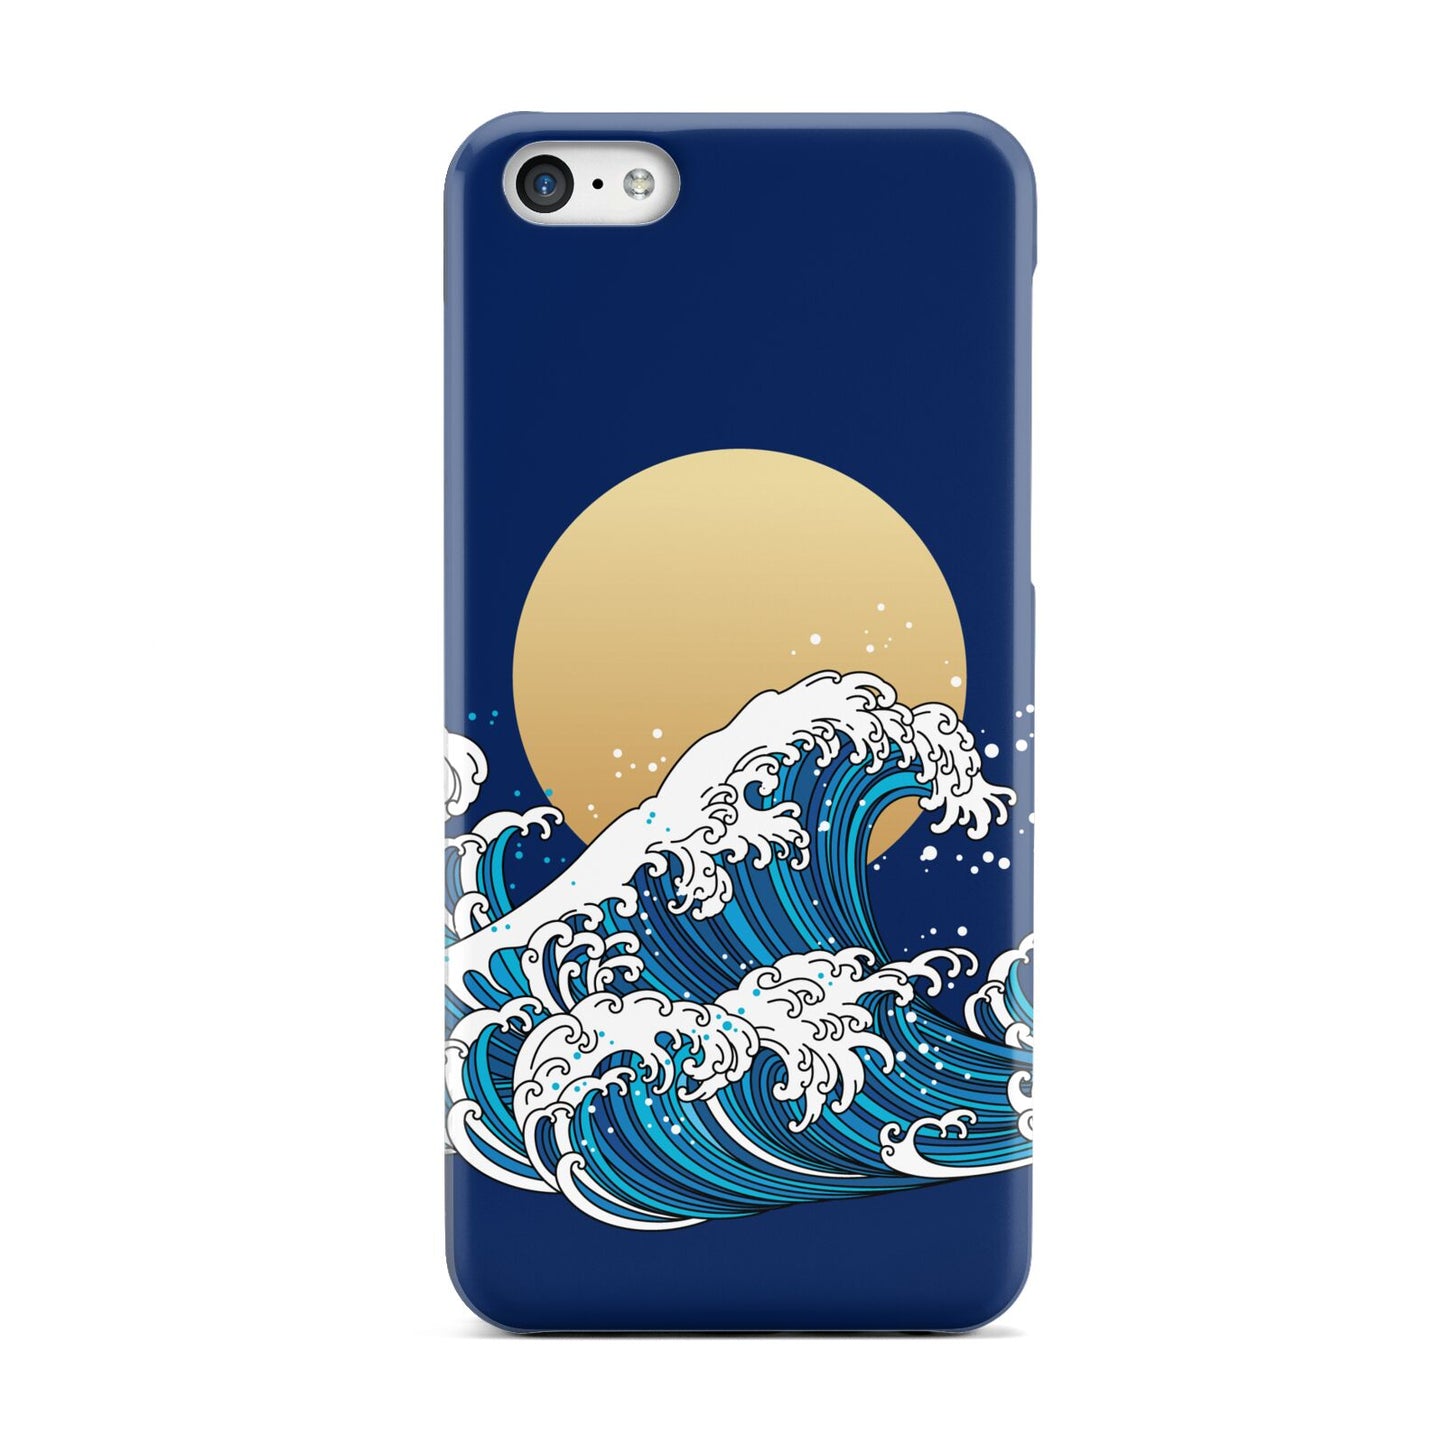 Hokusai Japanese Waves Apple iPhone 5c Case